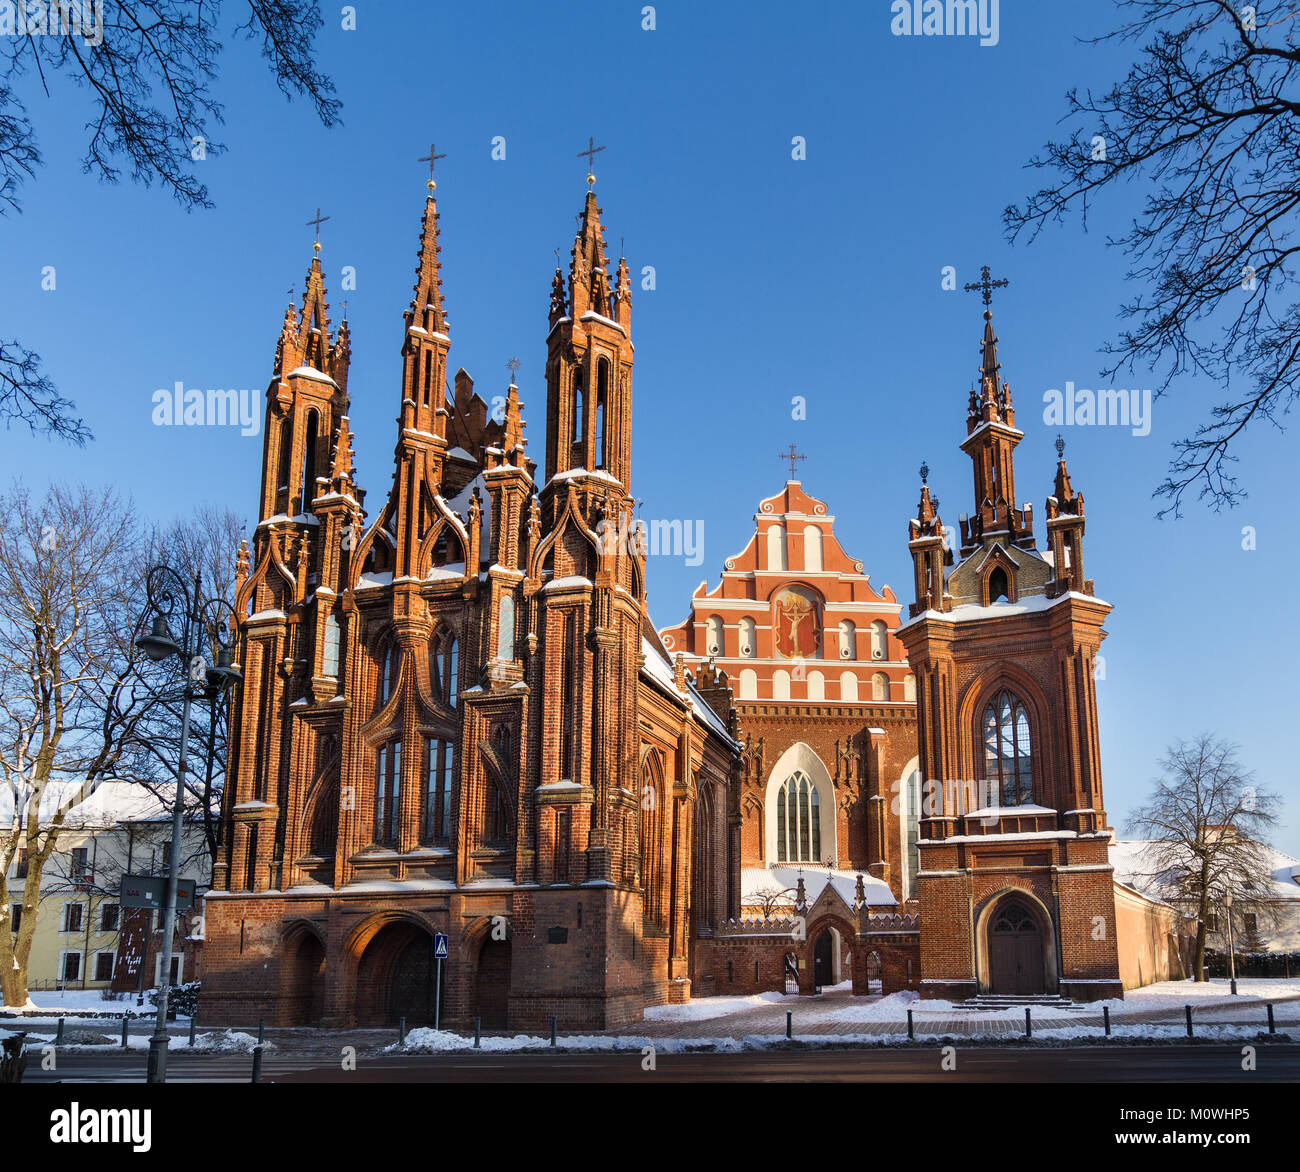 Vista frontal de ladrillo rojo de la gótica iglesia de Santa Ana y Bernardino iglesia en la ciudad vieja de Vilna, Lituania en un día de invierno. Foto de stock